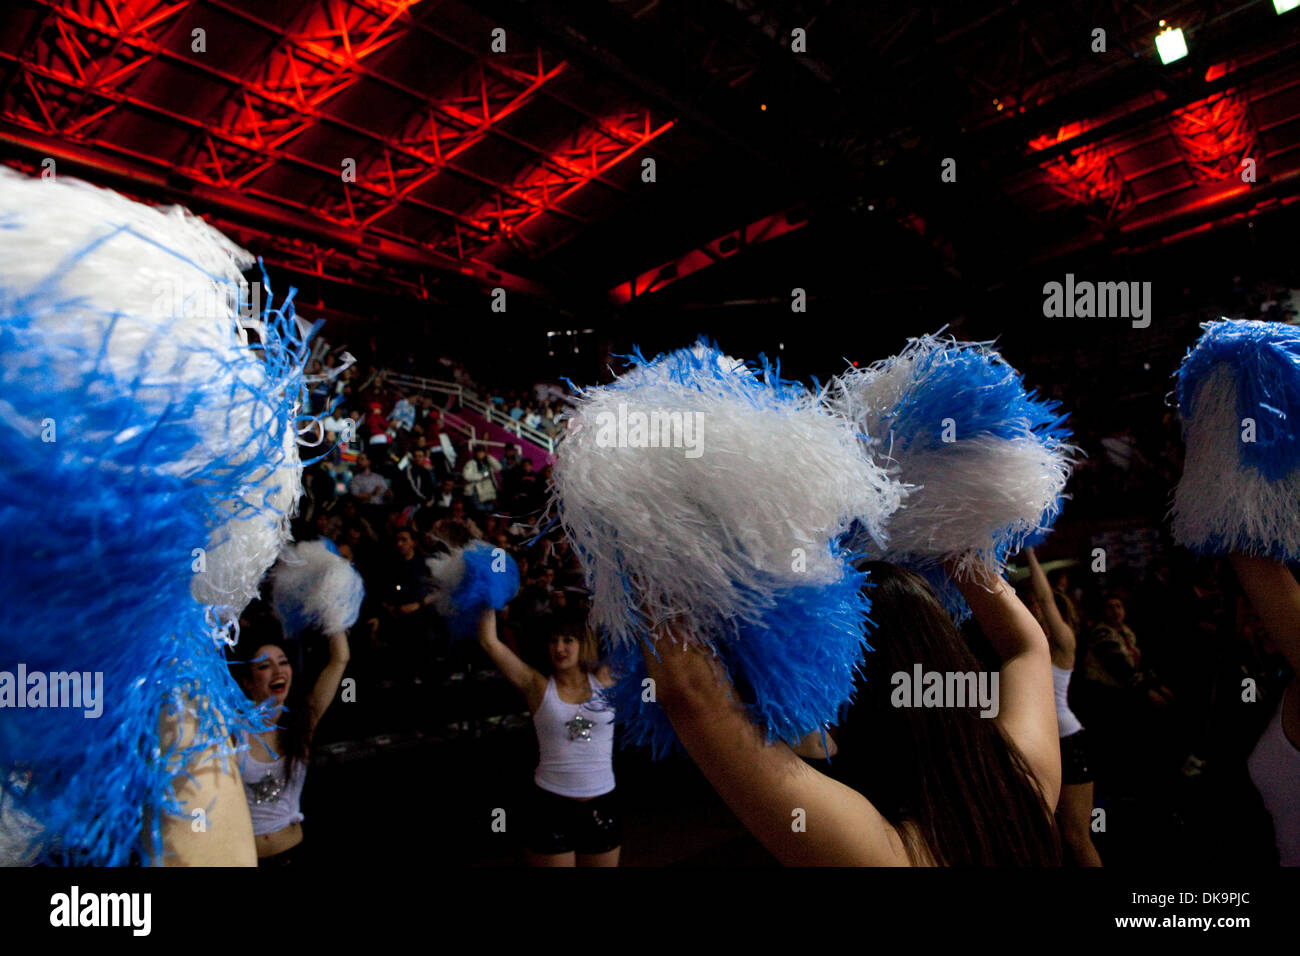 Aug 30, 2011 - Mar del Plata, Buenos Aires, Argentine - Interprètes et de meneurs lors de la cérémonie d'ouverture du championnat de basket-ball FIBA Amériques. (Crédit Image : © Ryan Noble/ZUMApress.com) Banque D'Images